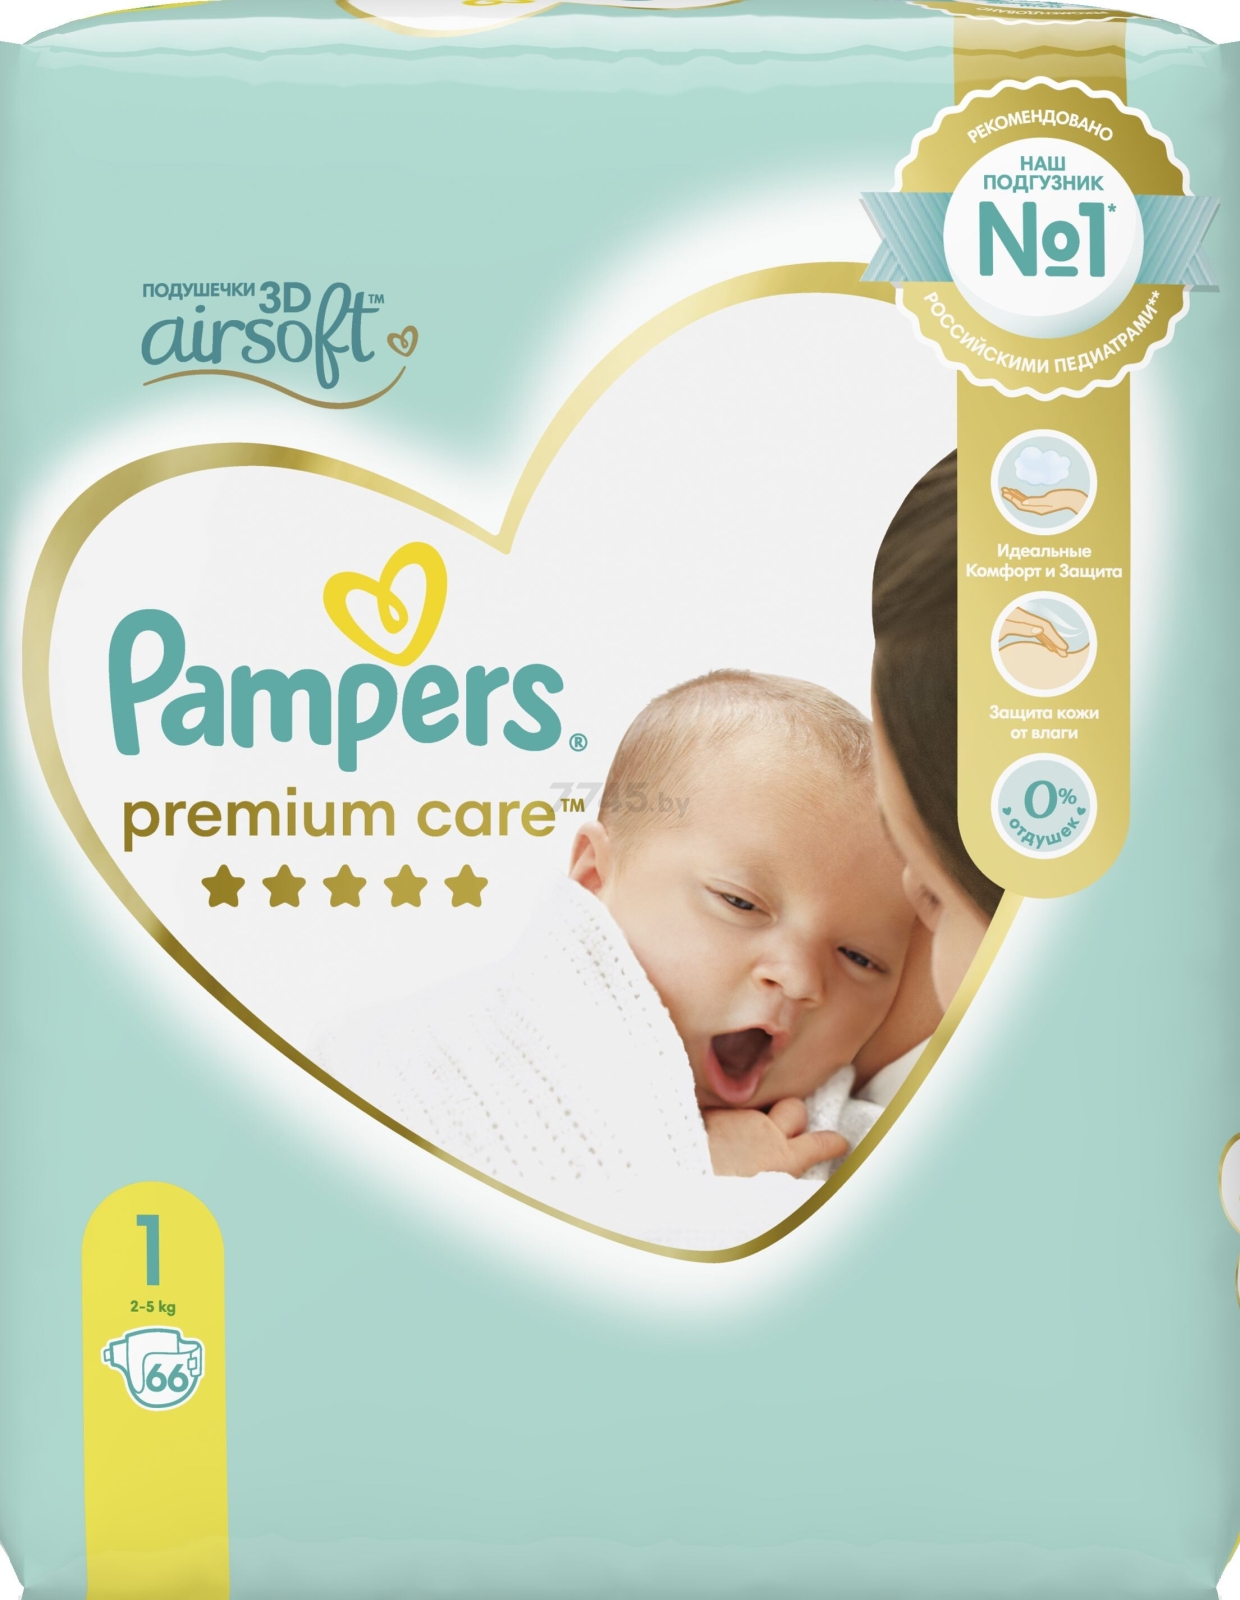 Подгузники PAMPERS Premium Care 1 Newborn 2-5 кг 66 штук (8006540527382) - Фото 3